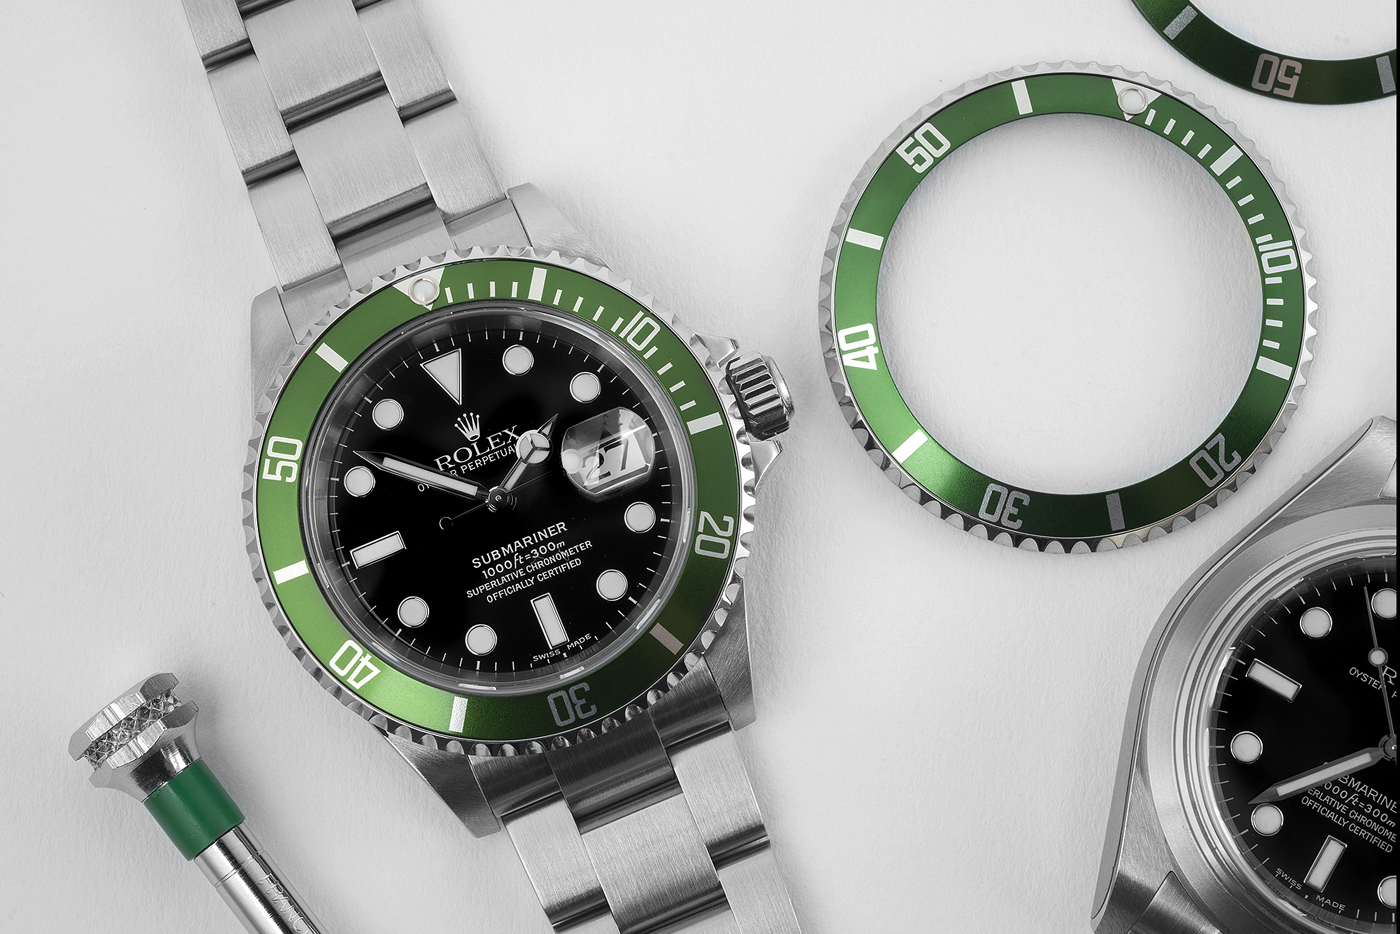 Rolex Kermit Submariner Green Bezel Watch